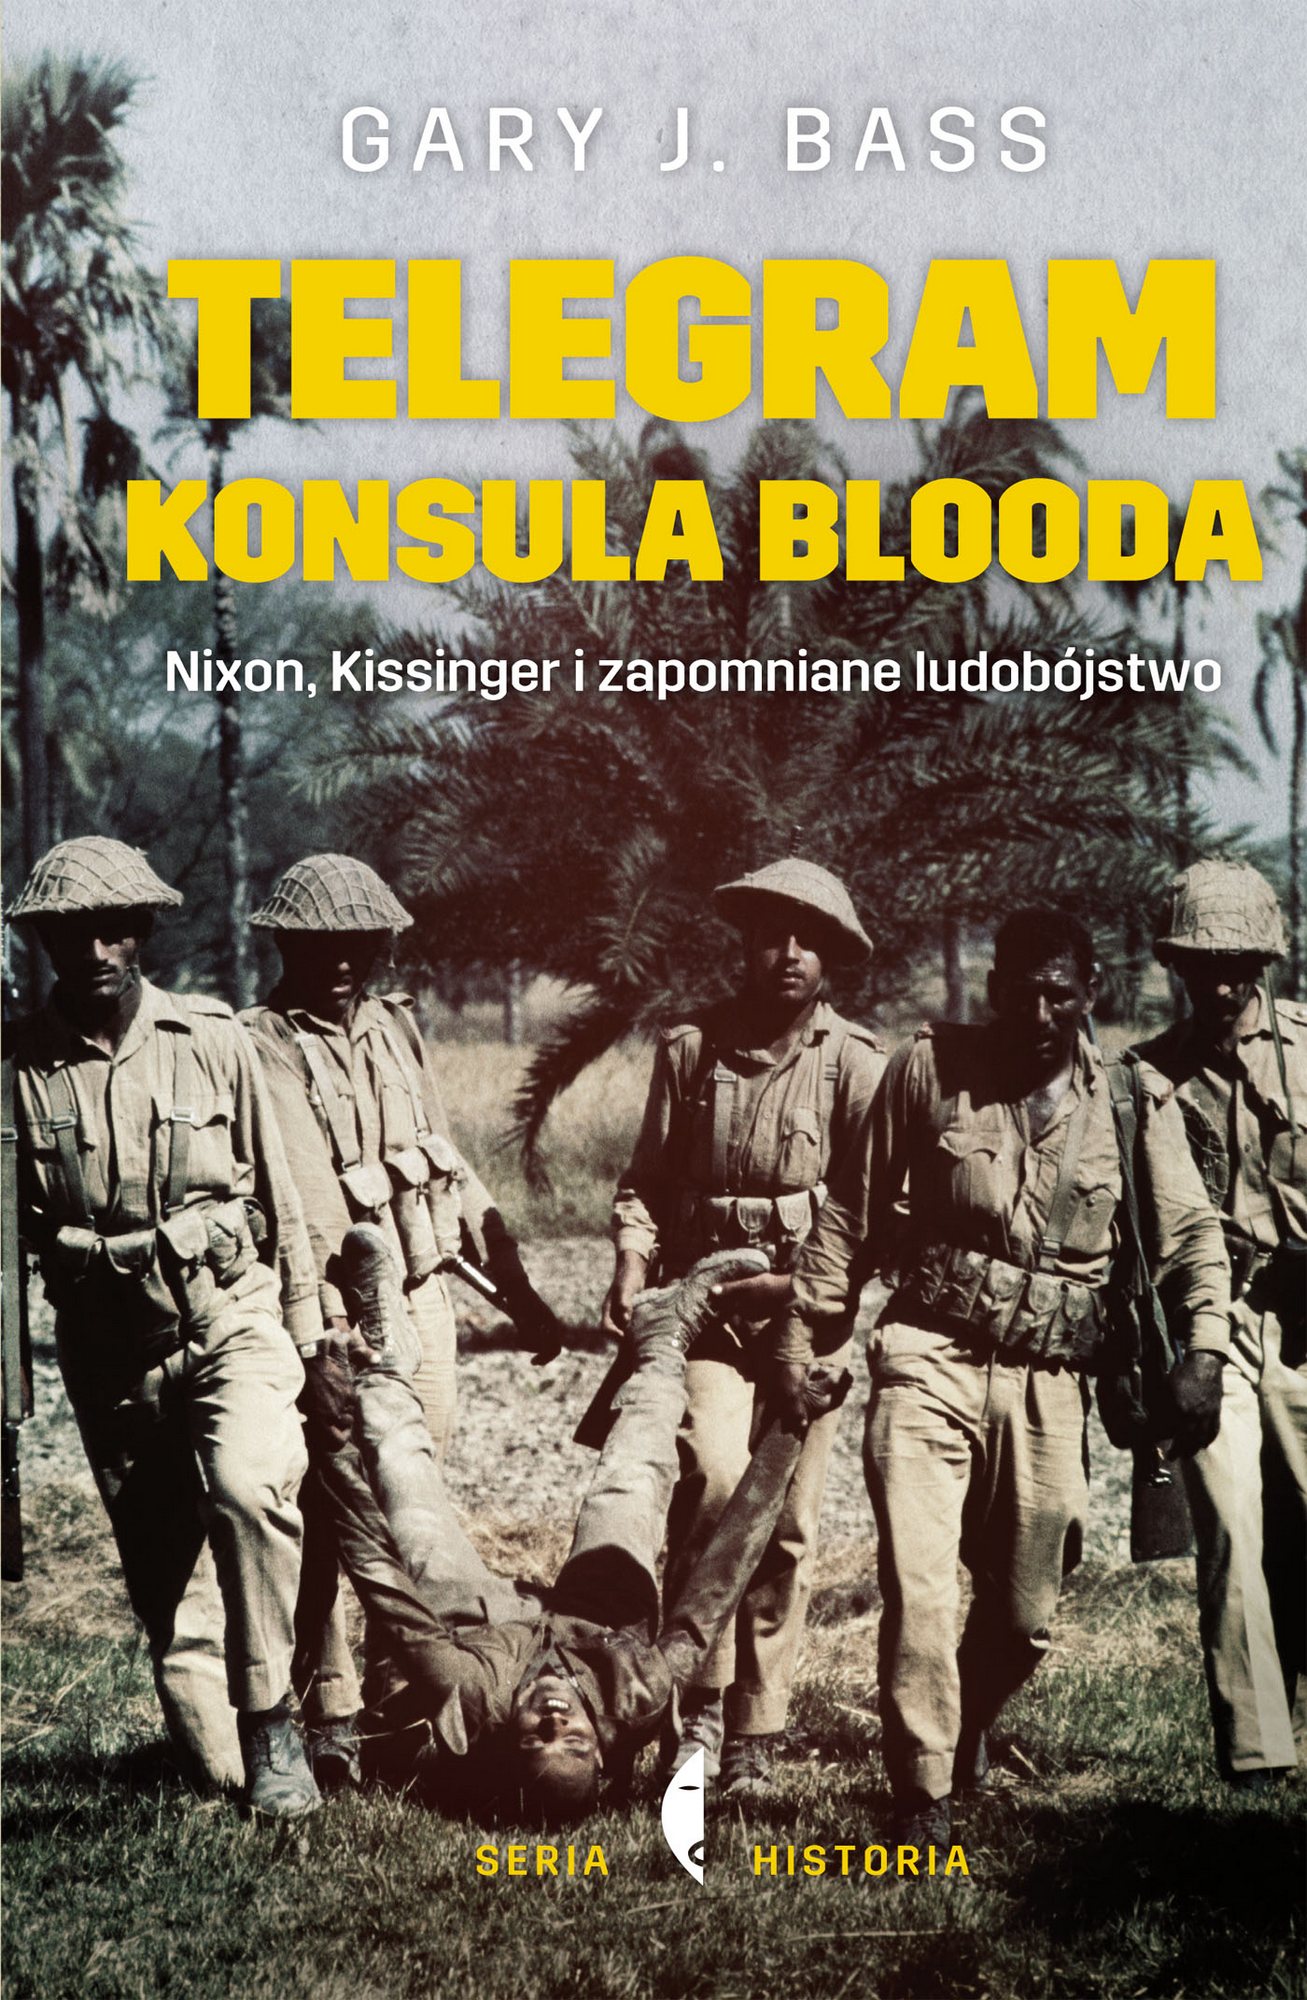 Gary J. Bass, „Telegram konsula Blooda. Nixon, Kissinger i zapomniane ludobójstwo” – okładka (źródło: materiały prasowe wydawcy)